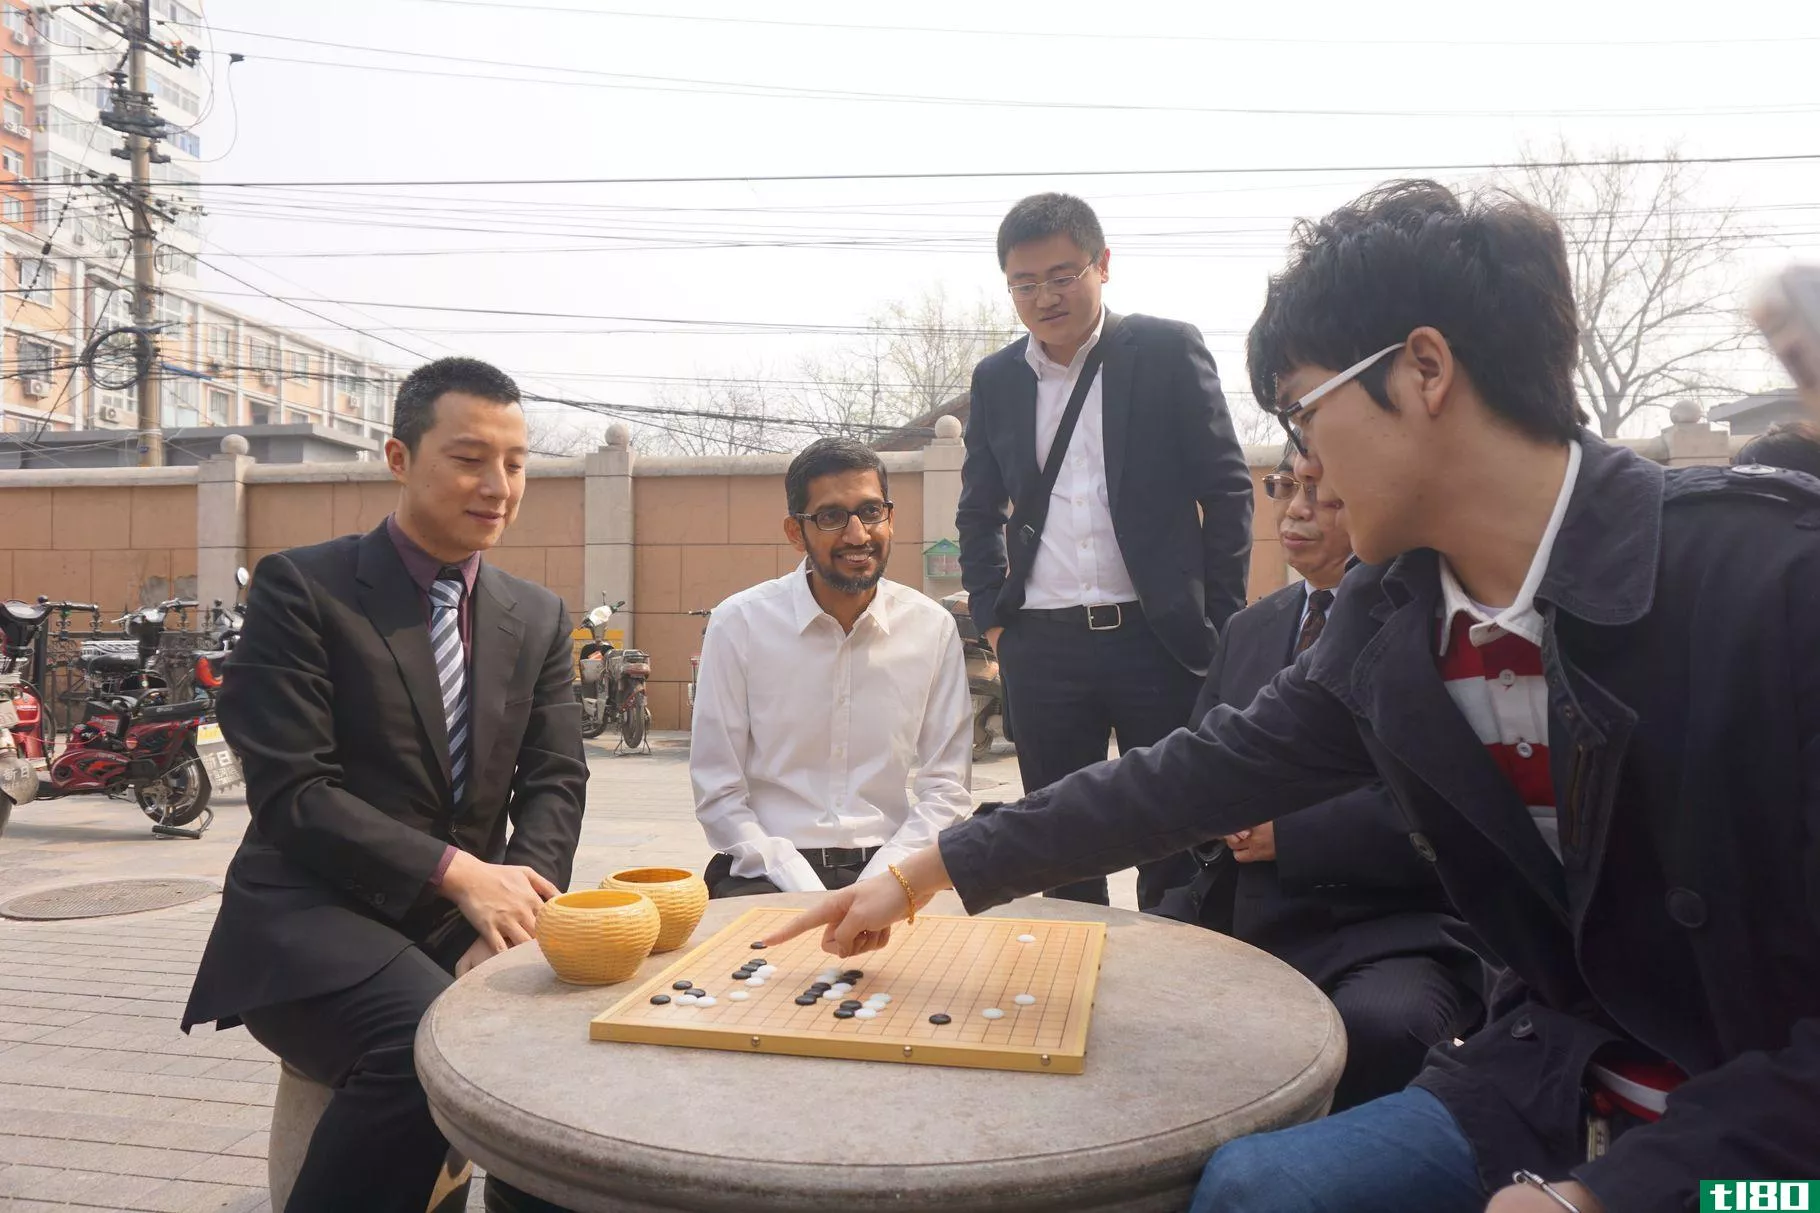 谷歌的alphago人工智能即将与世界上最好的围棋选手对决